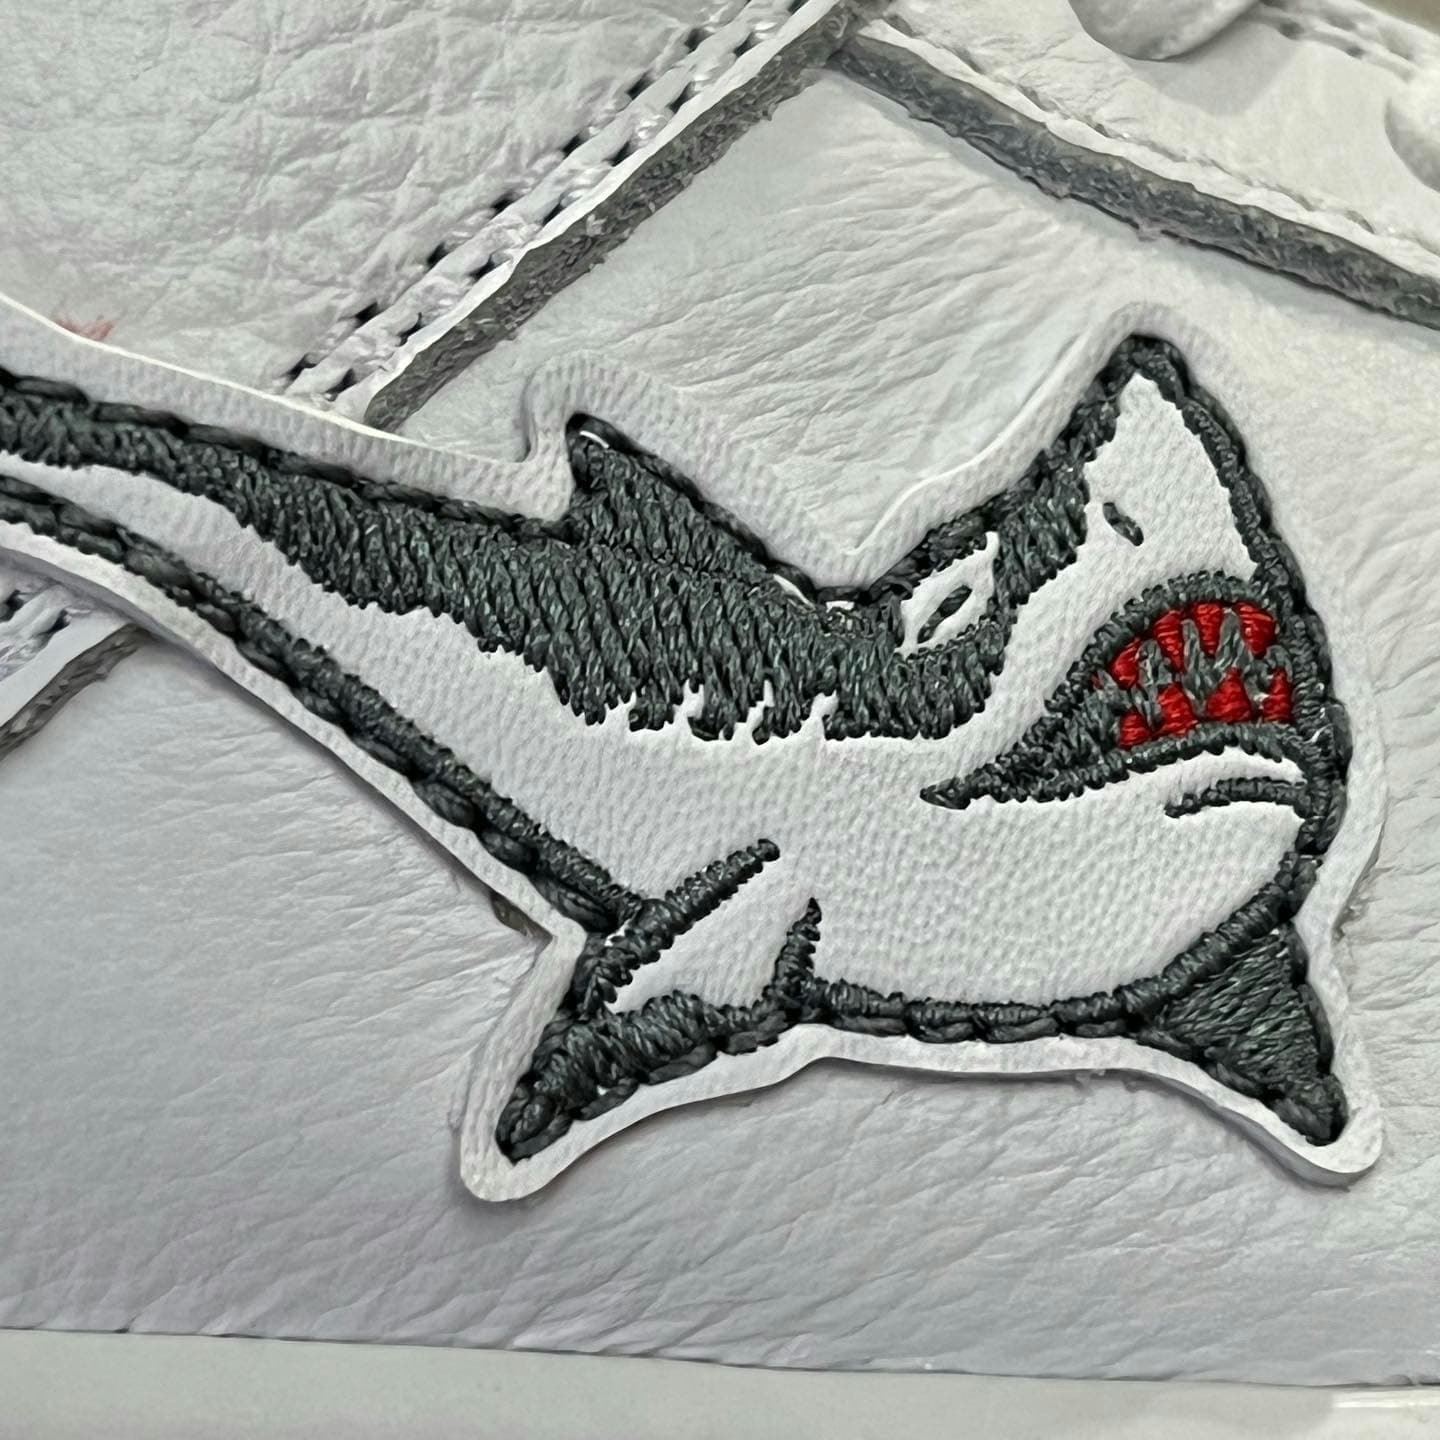 Oski x Nike SB Dunk High "Great White Shark" 